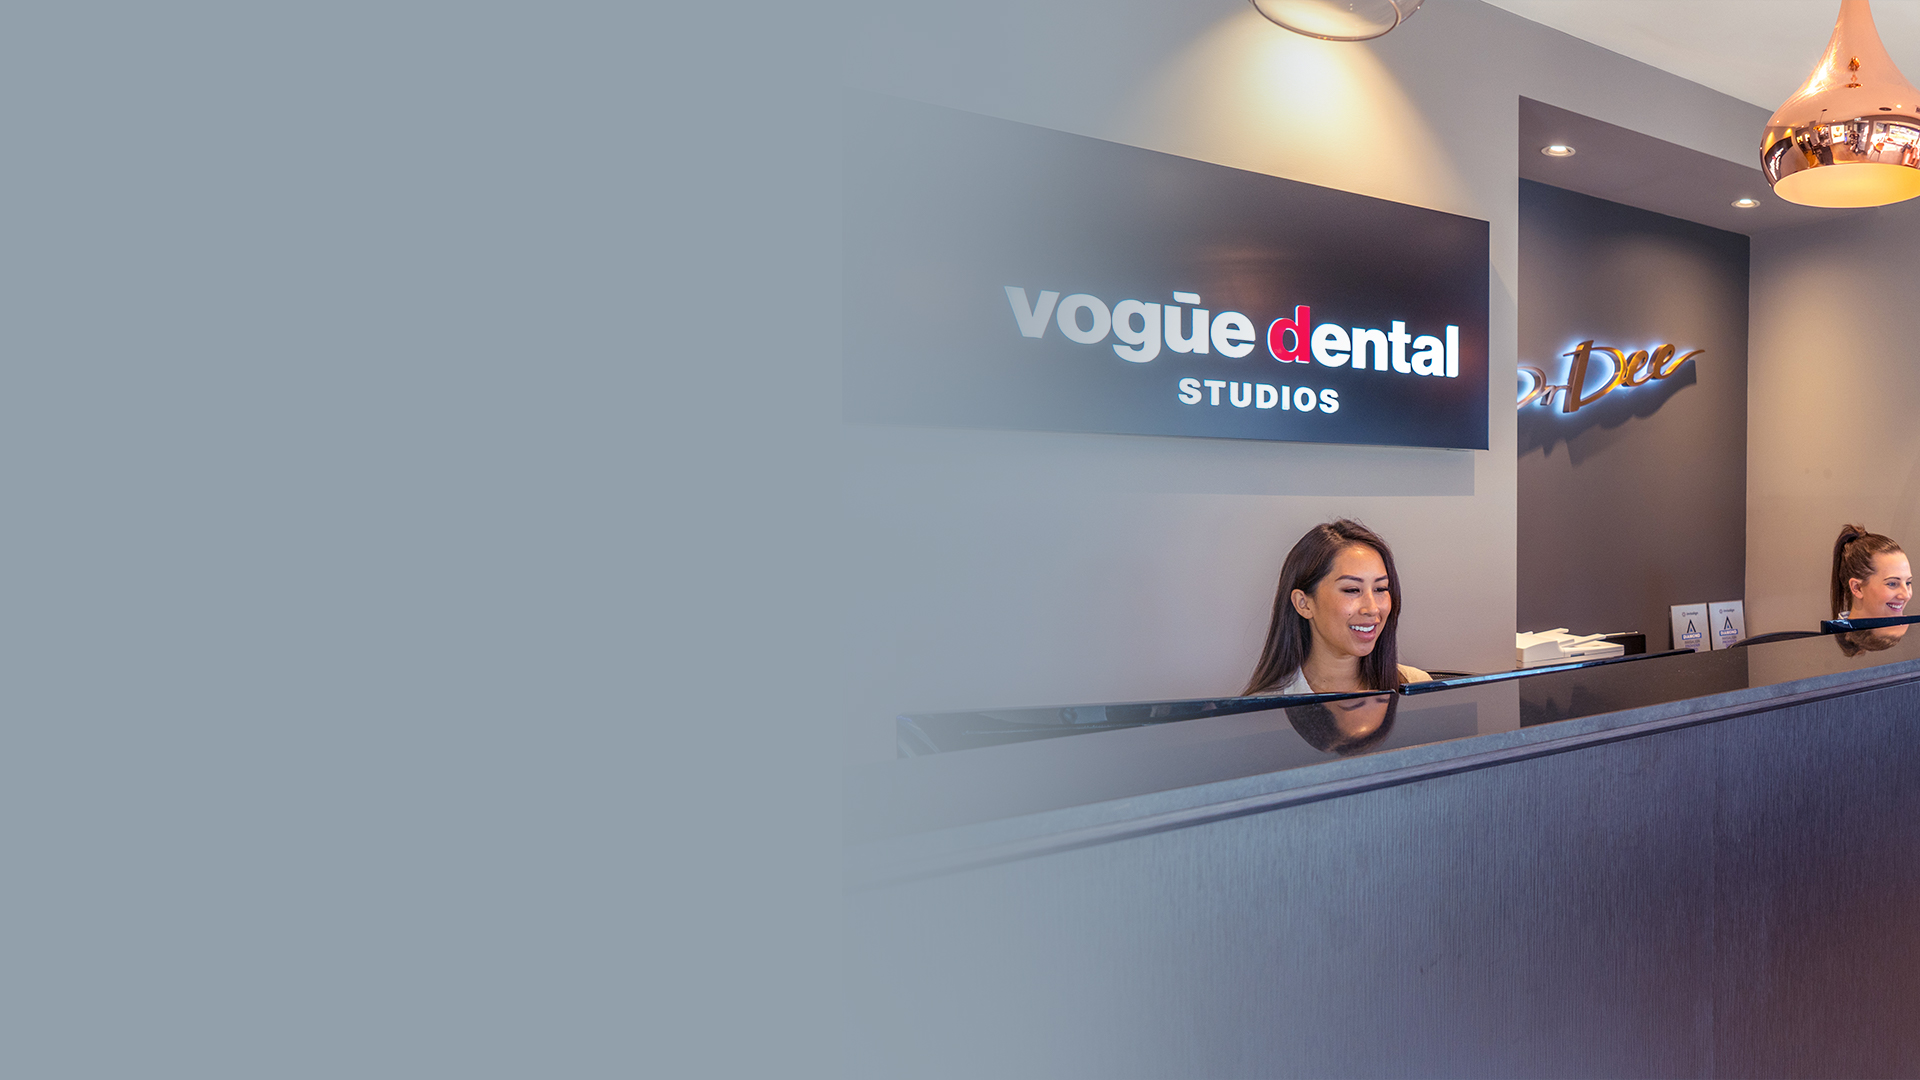 Vogue Dental Studios reception desk with rose gold pendant lights.